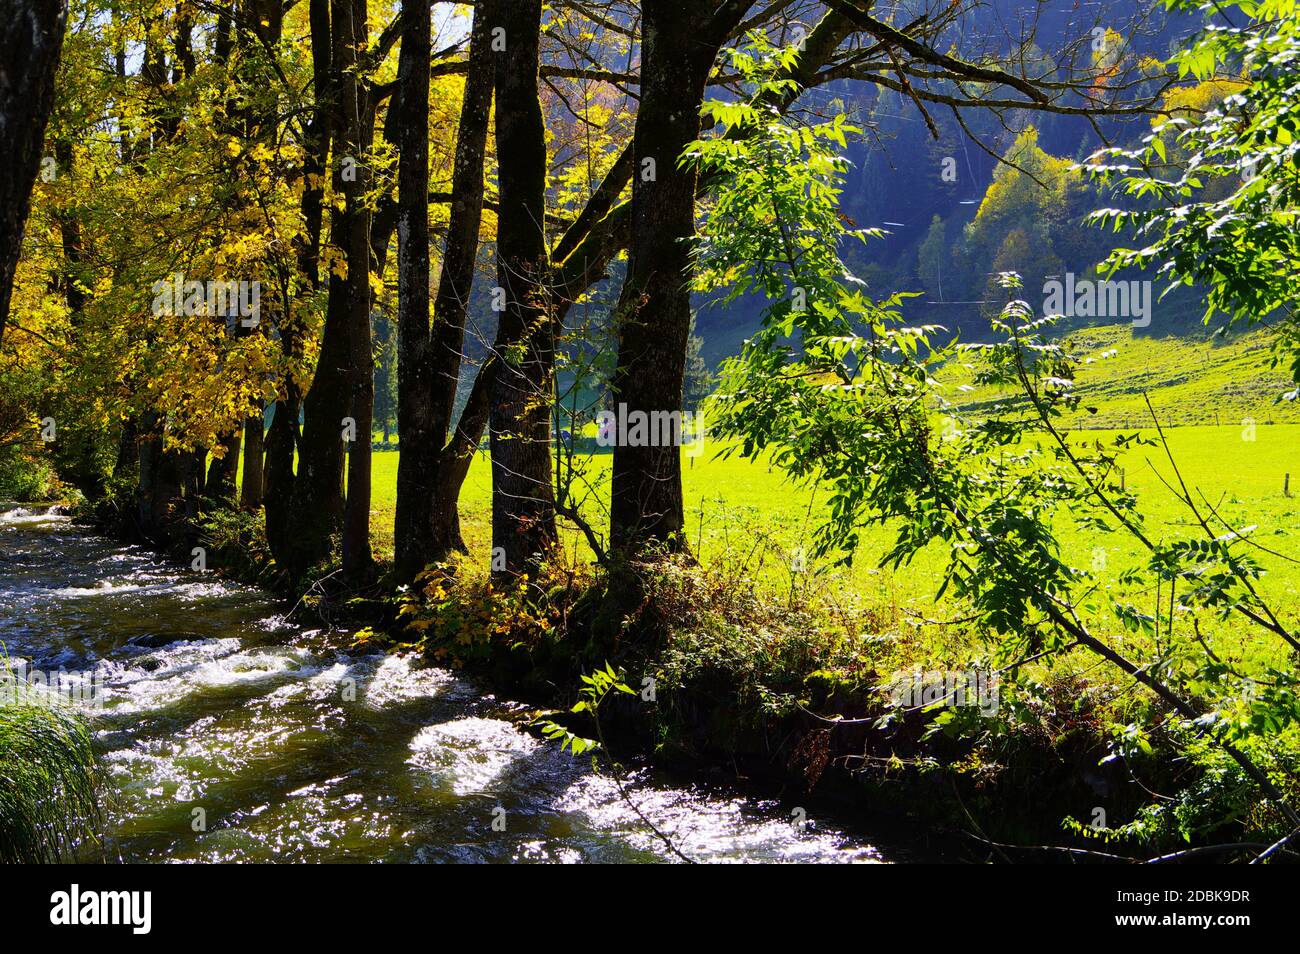 Idyllischer Bergbach mit Bäumen in Herbstfarben am Ufer in schönem Sonnenlicht Stockfoto